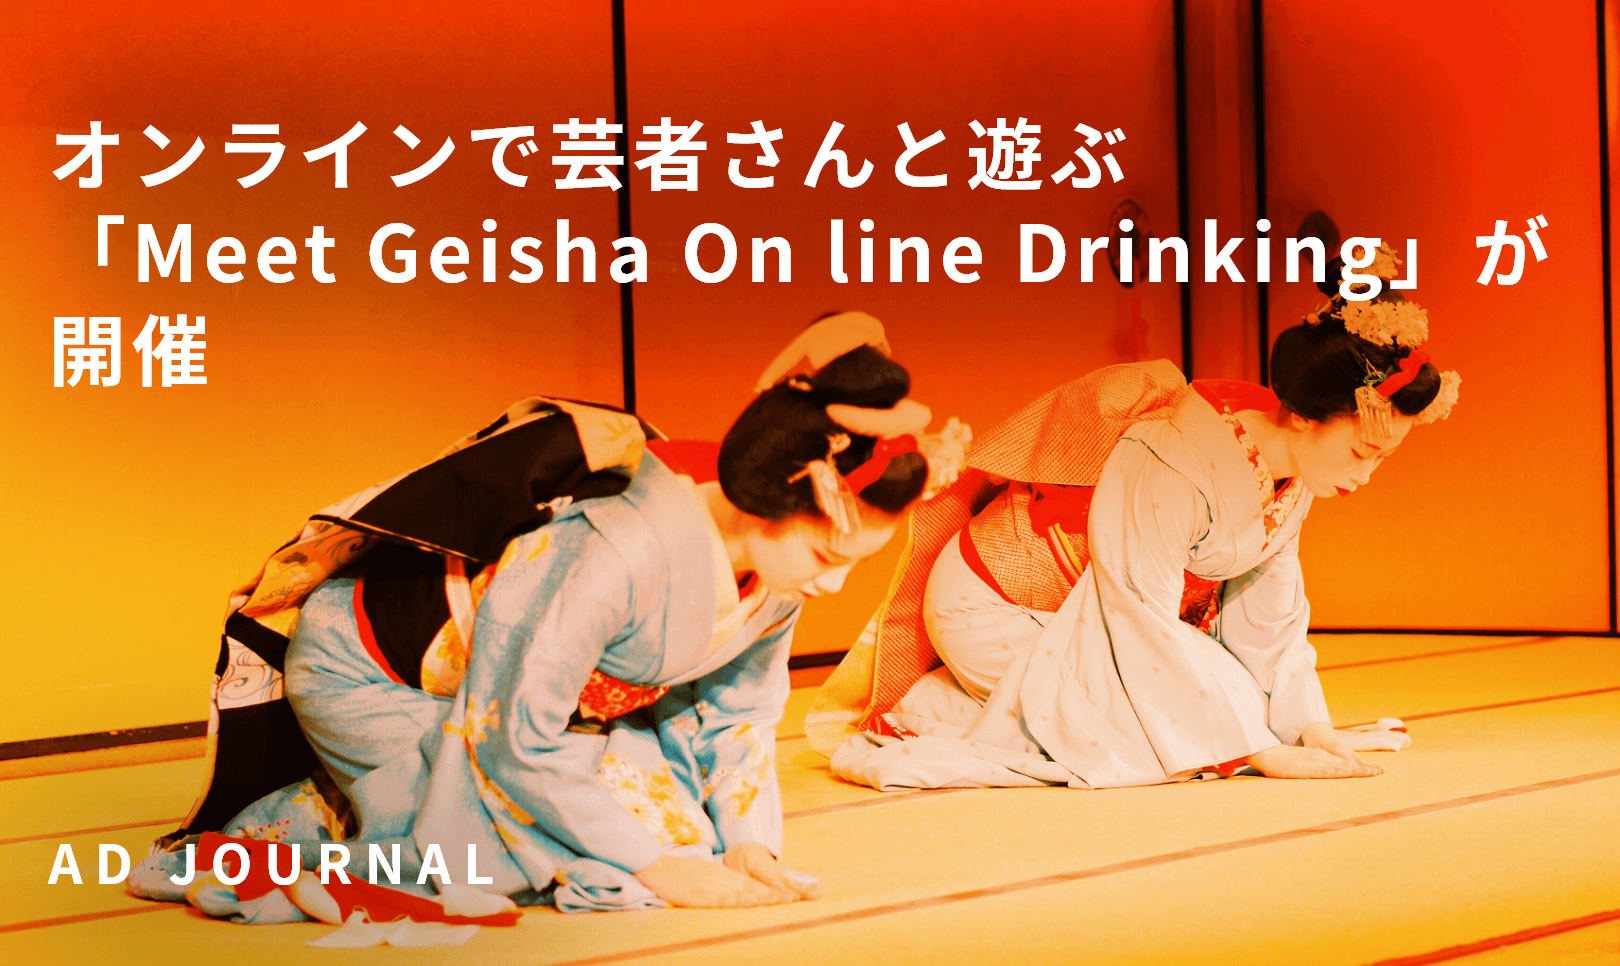 オンラインで芸者さんと遊ぶ「Meet Geisha On line Drinking」が開催